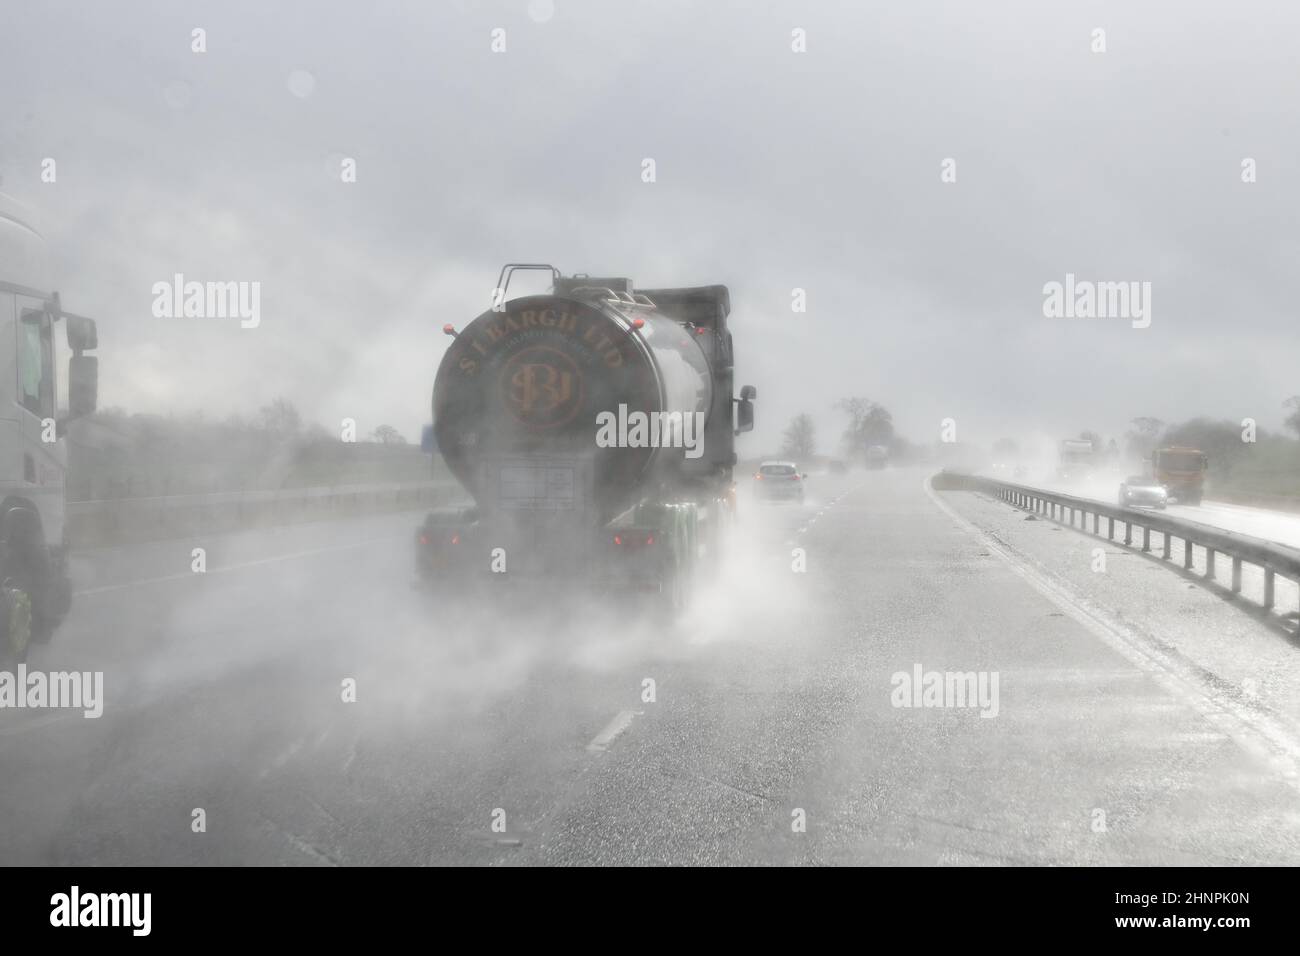 Conduite sur autoroute avec mauvaise visibilité avec pluie et pulvérisation de la route des véhicules en avant conduite au soleil - Royaume-Uni Banque D'Images